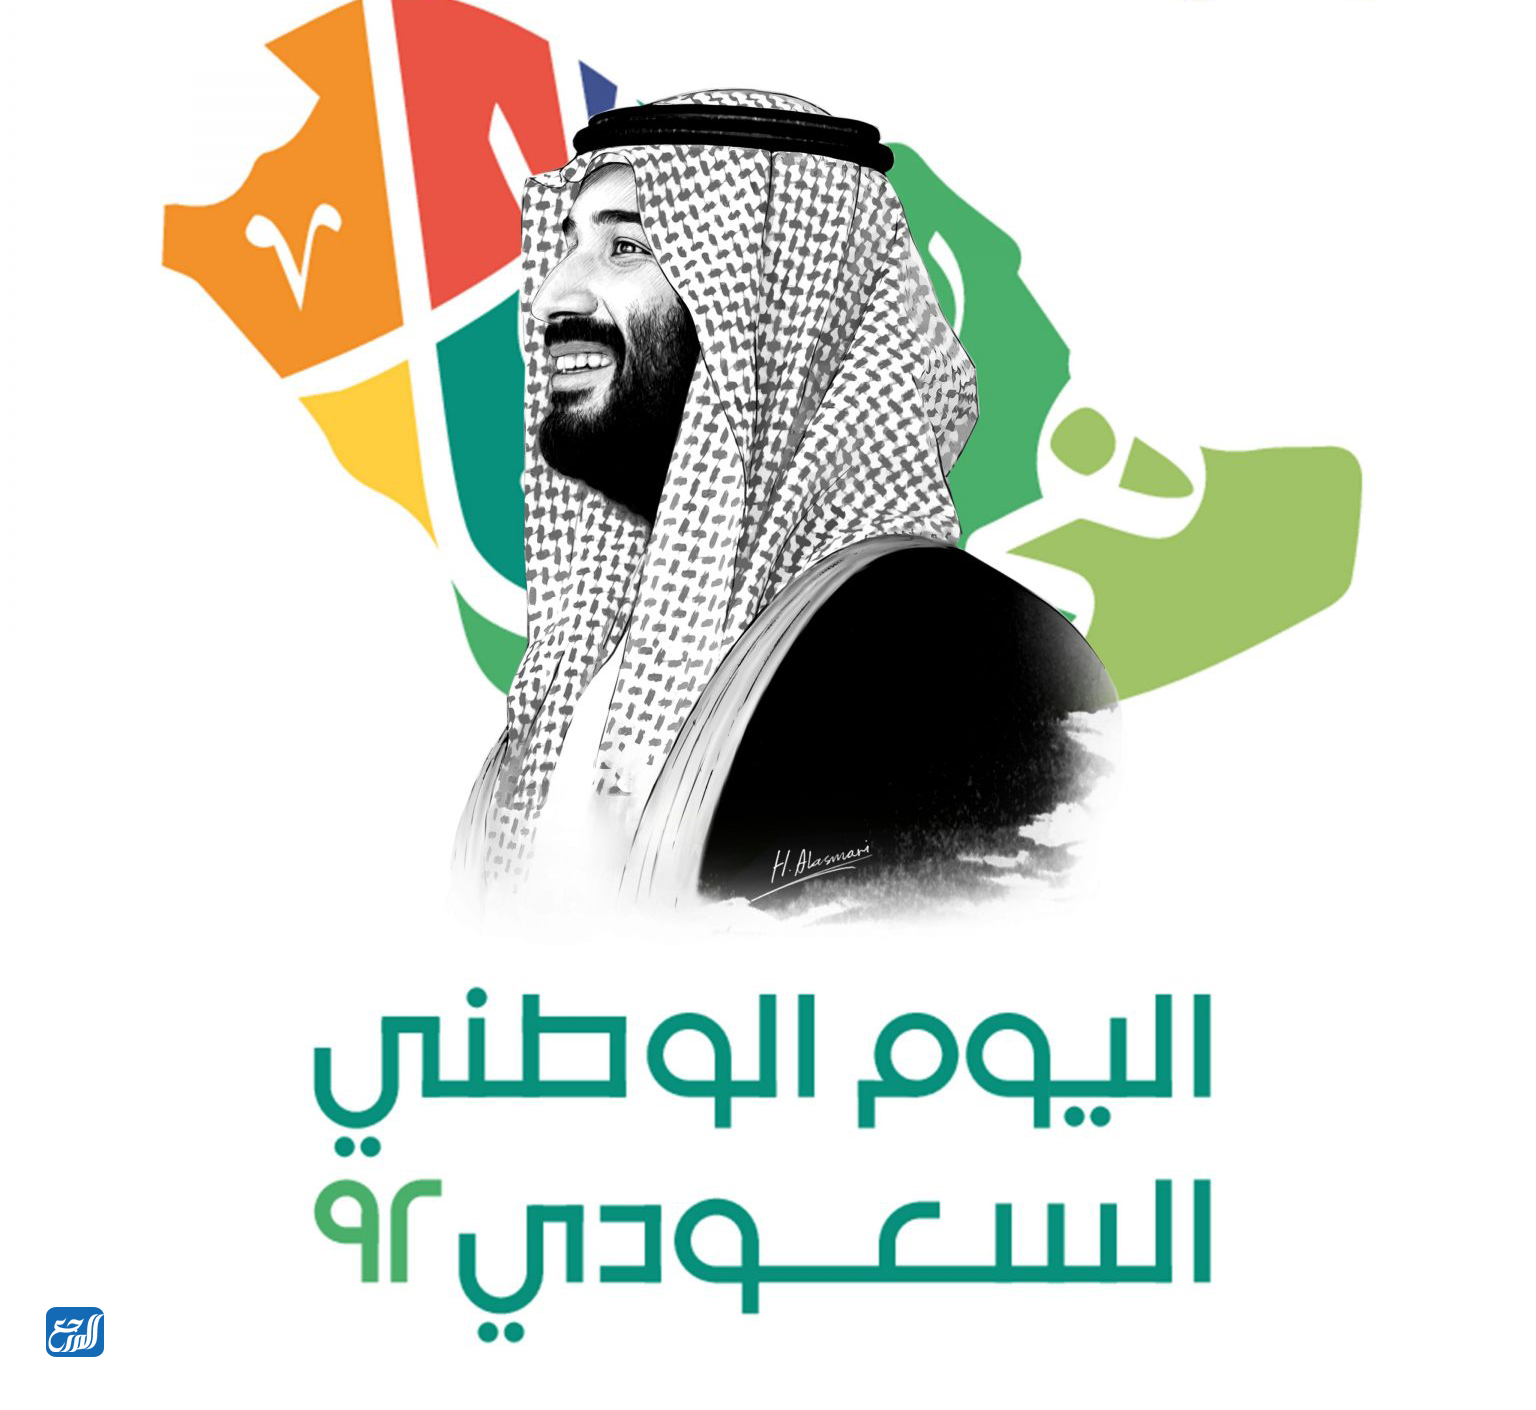 صور اليوم الوطني السعودي 92. الشعار